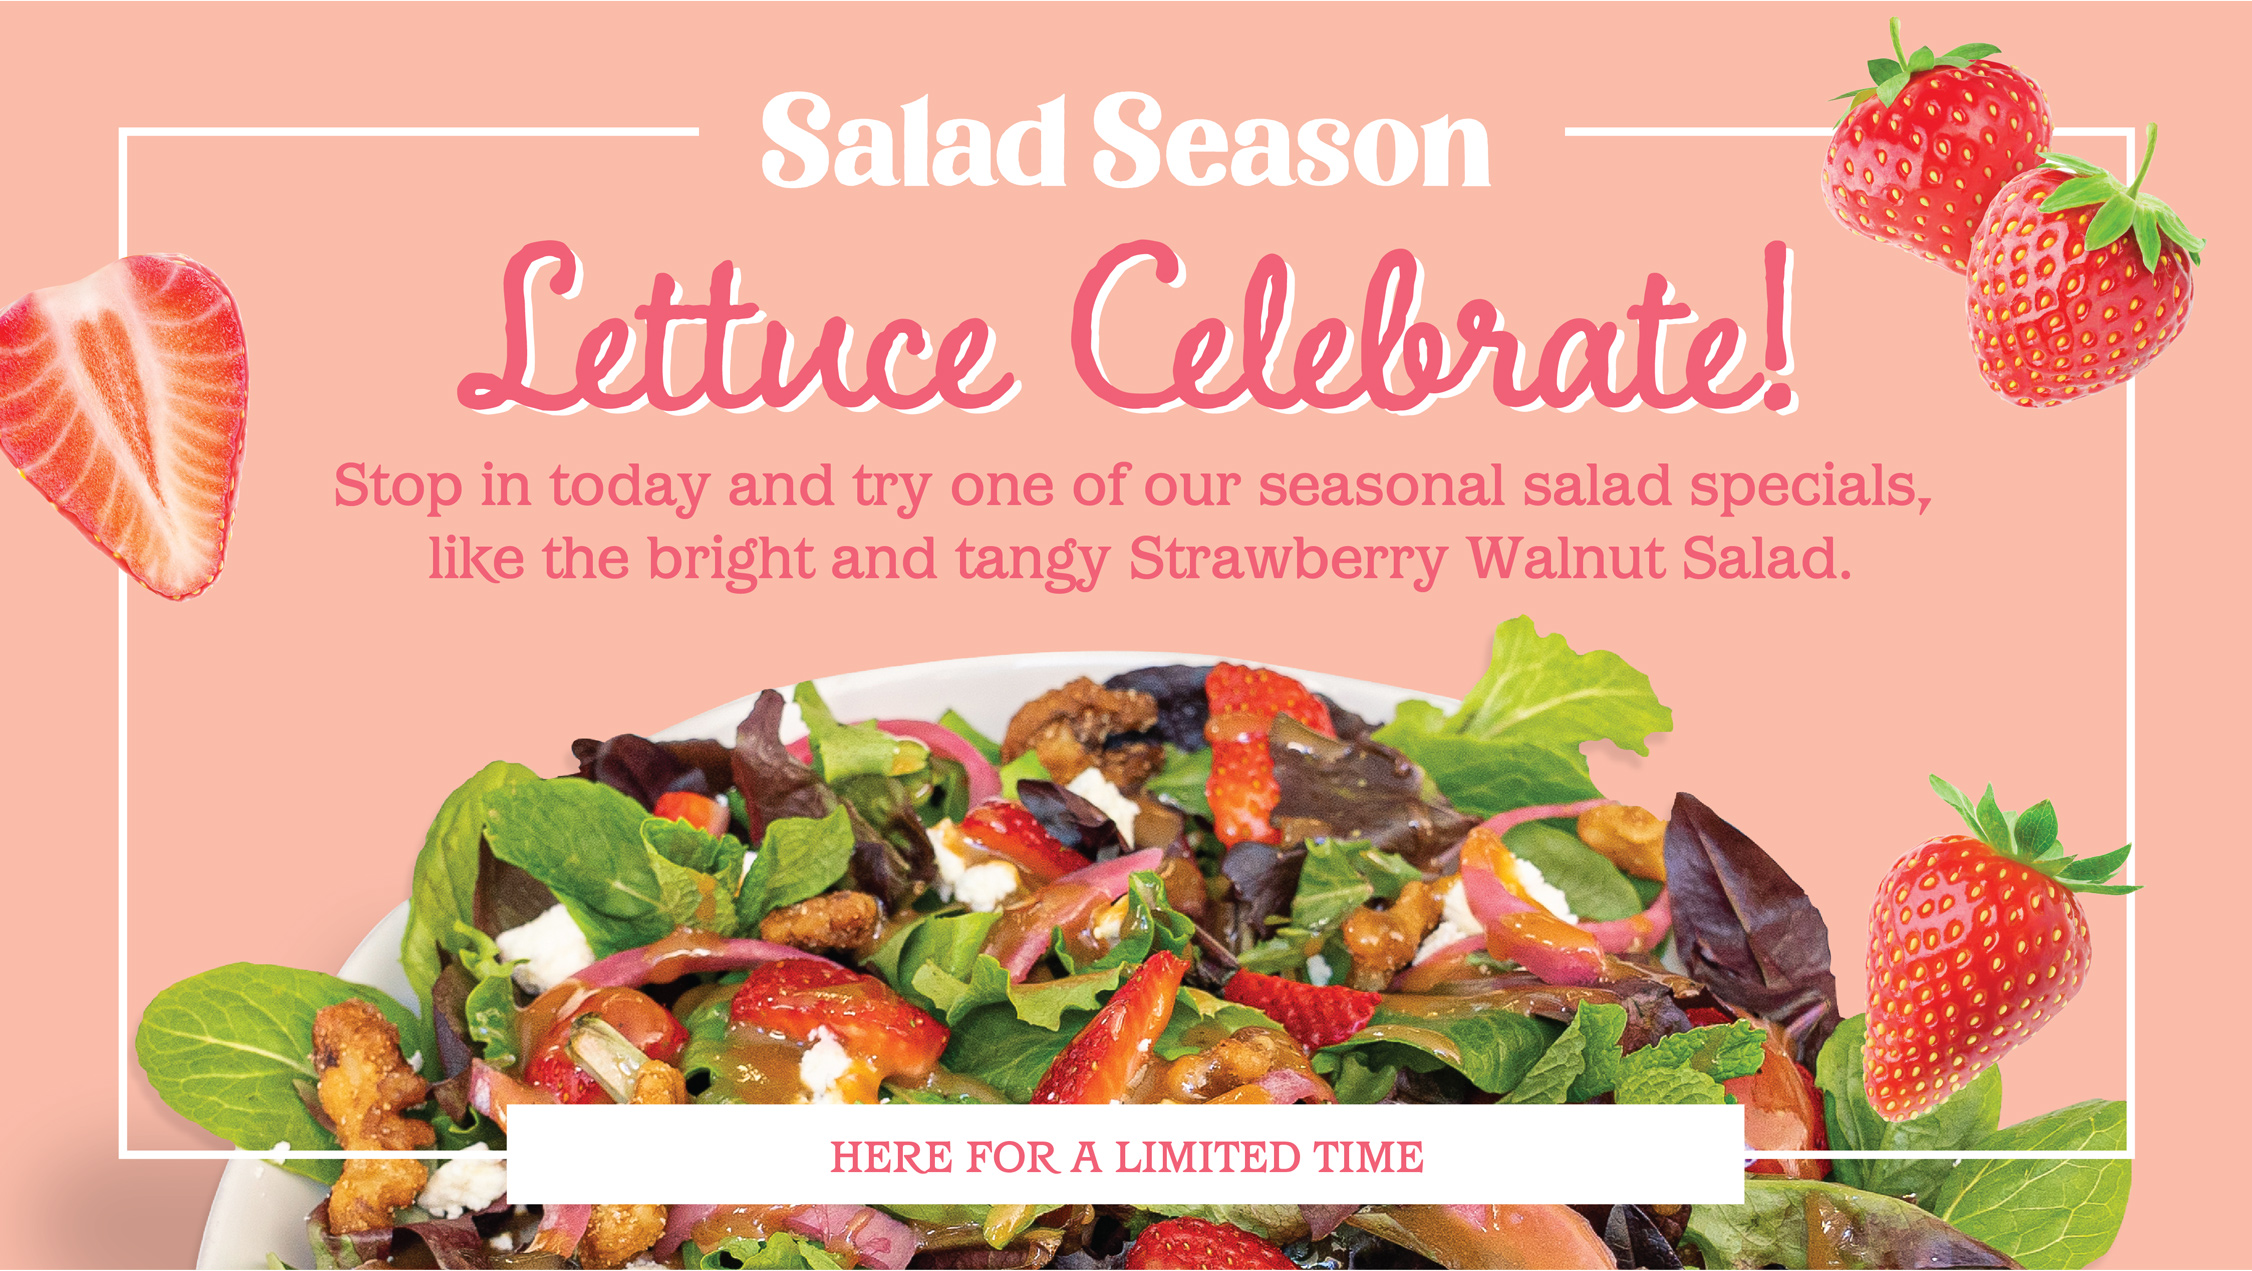 Salad Season is Back!